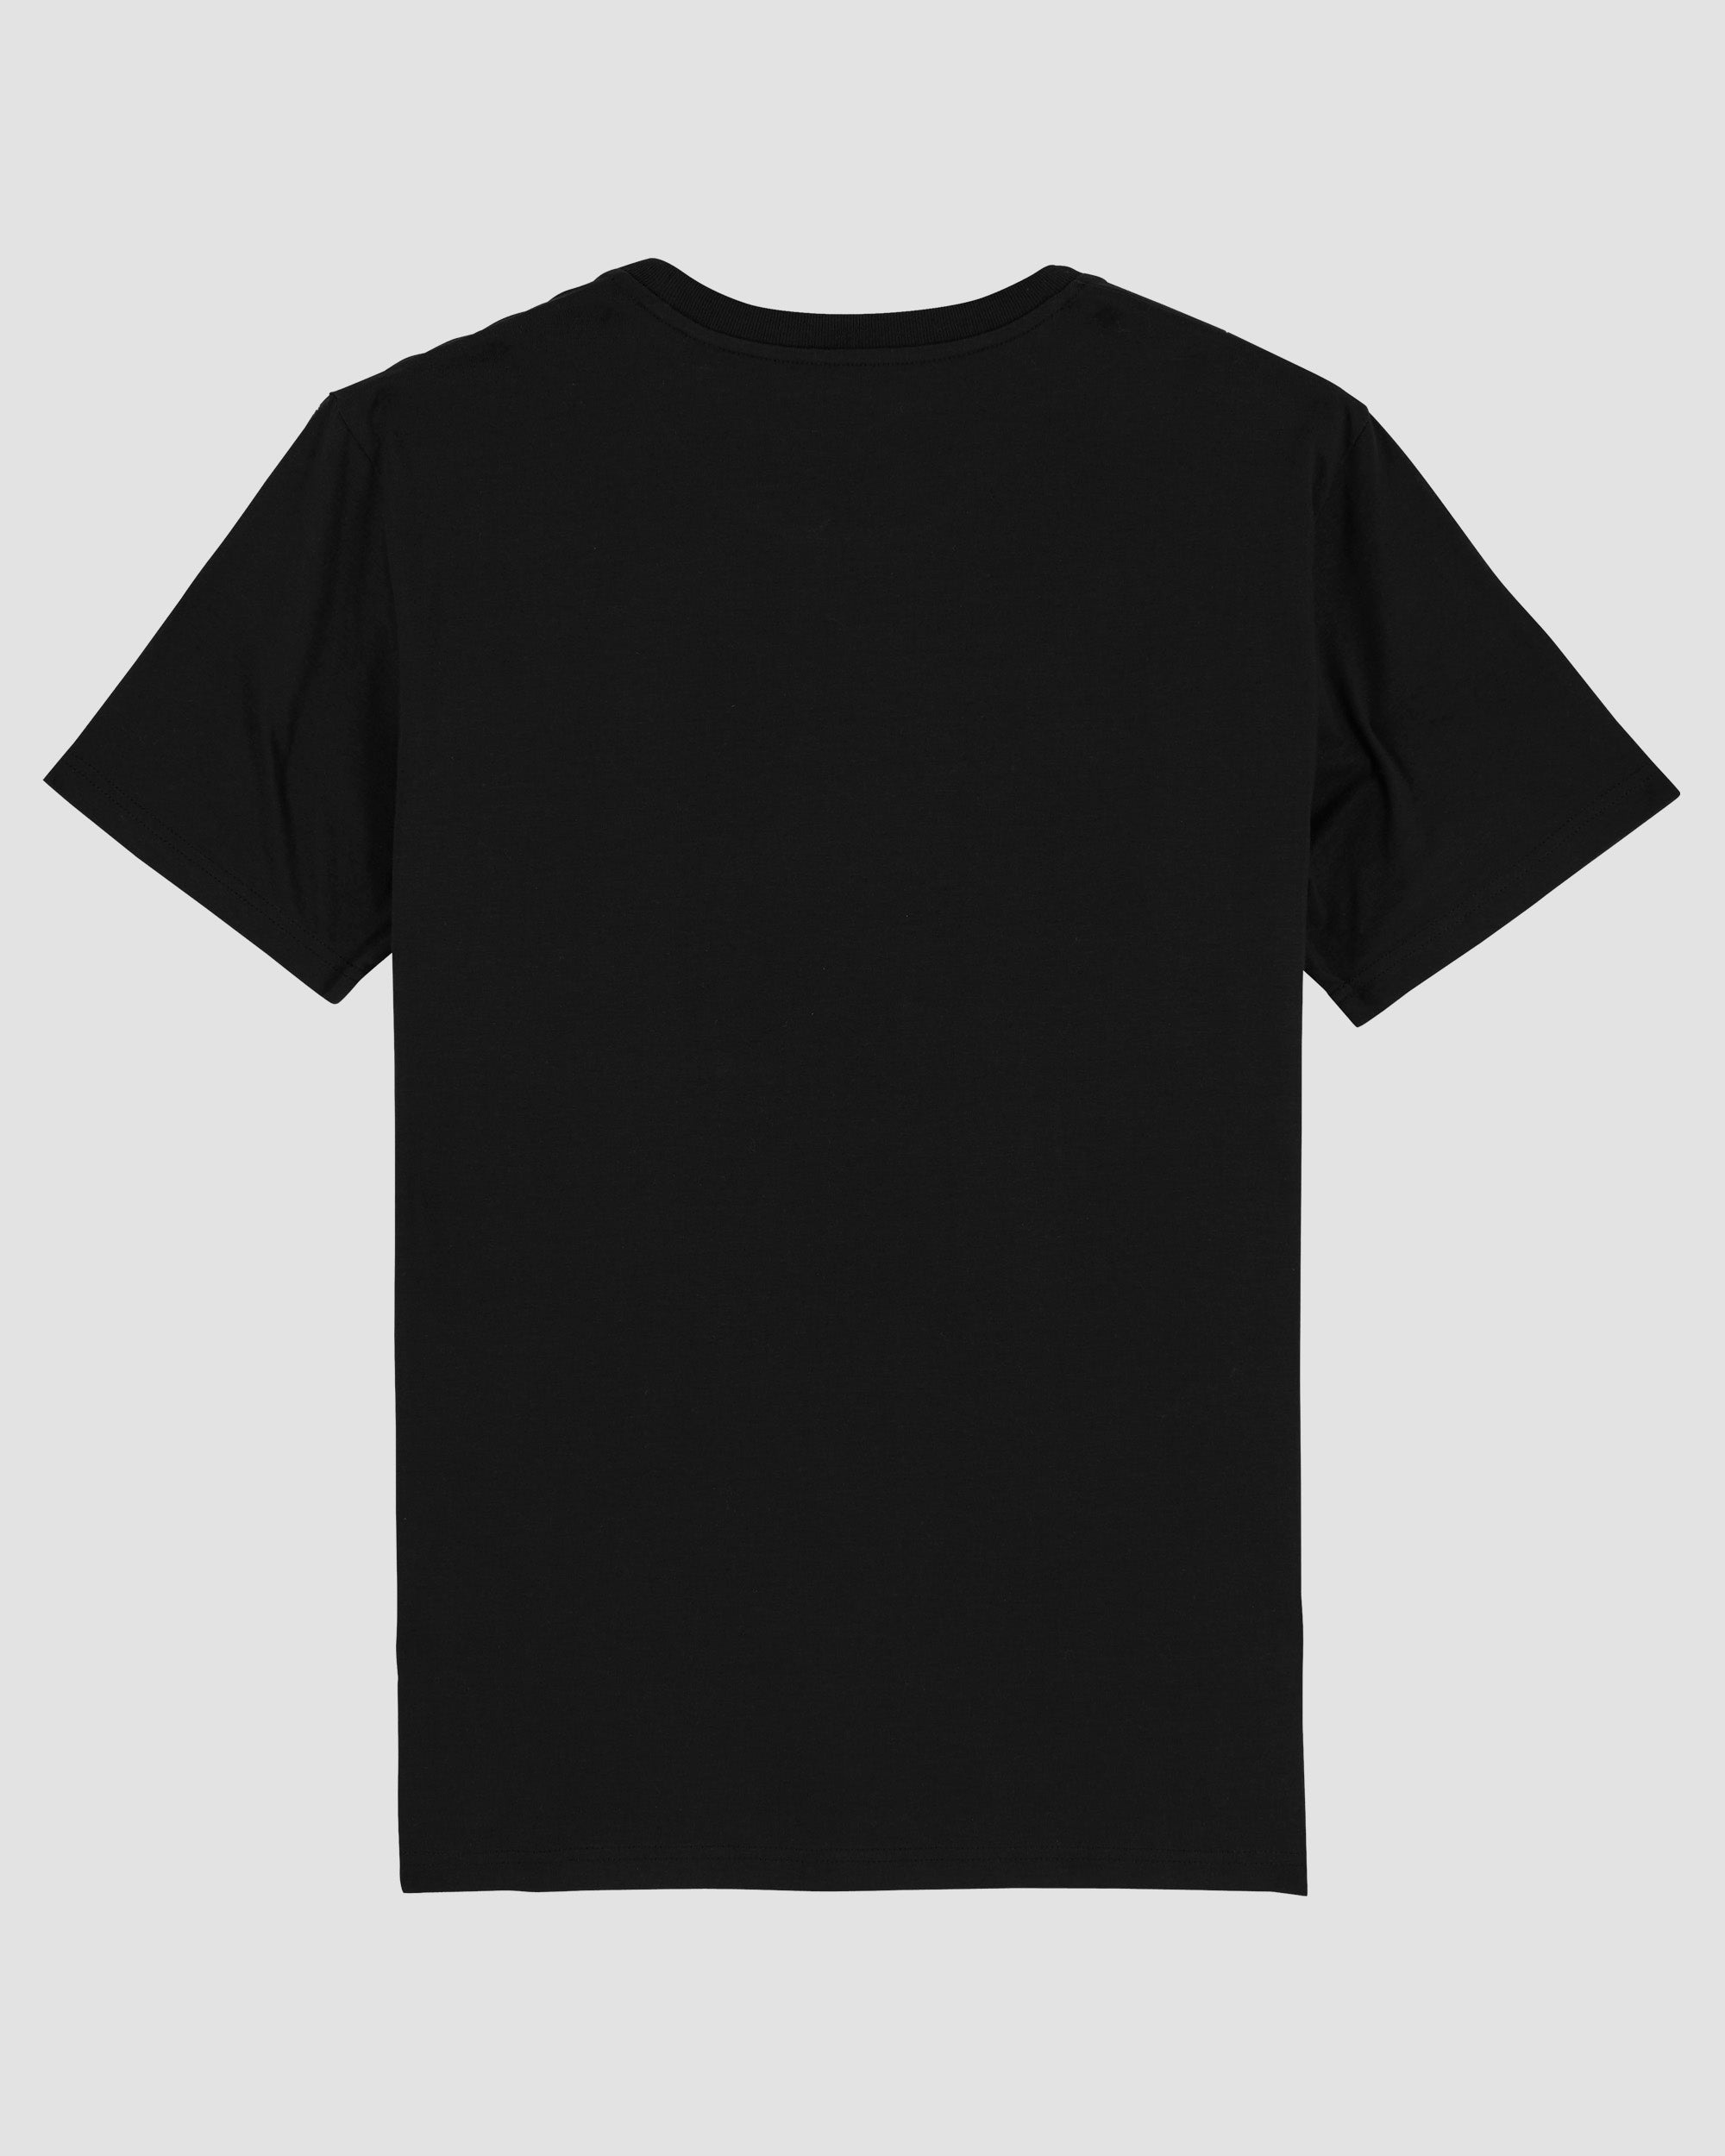 Raue Raute | 3-Style T-Shirt